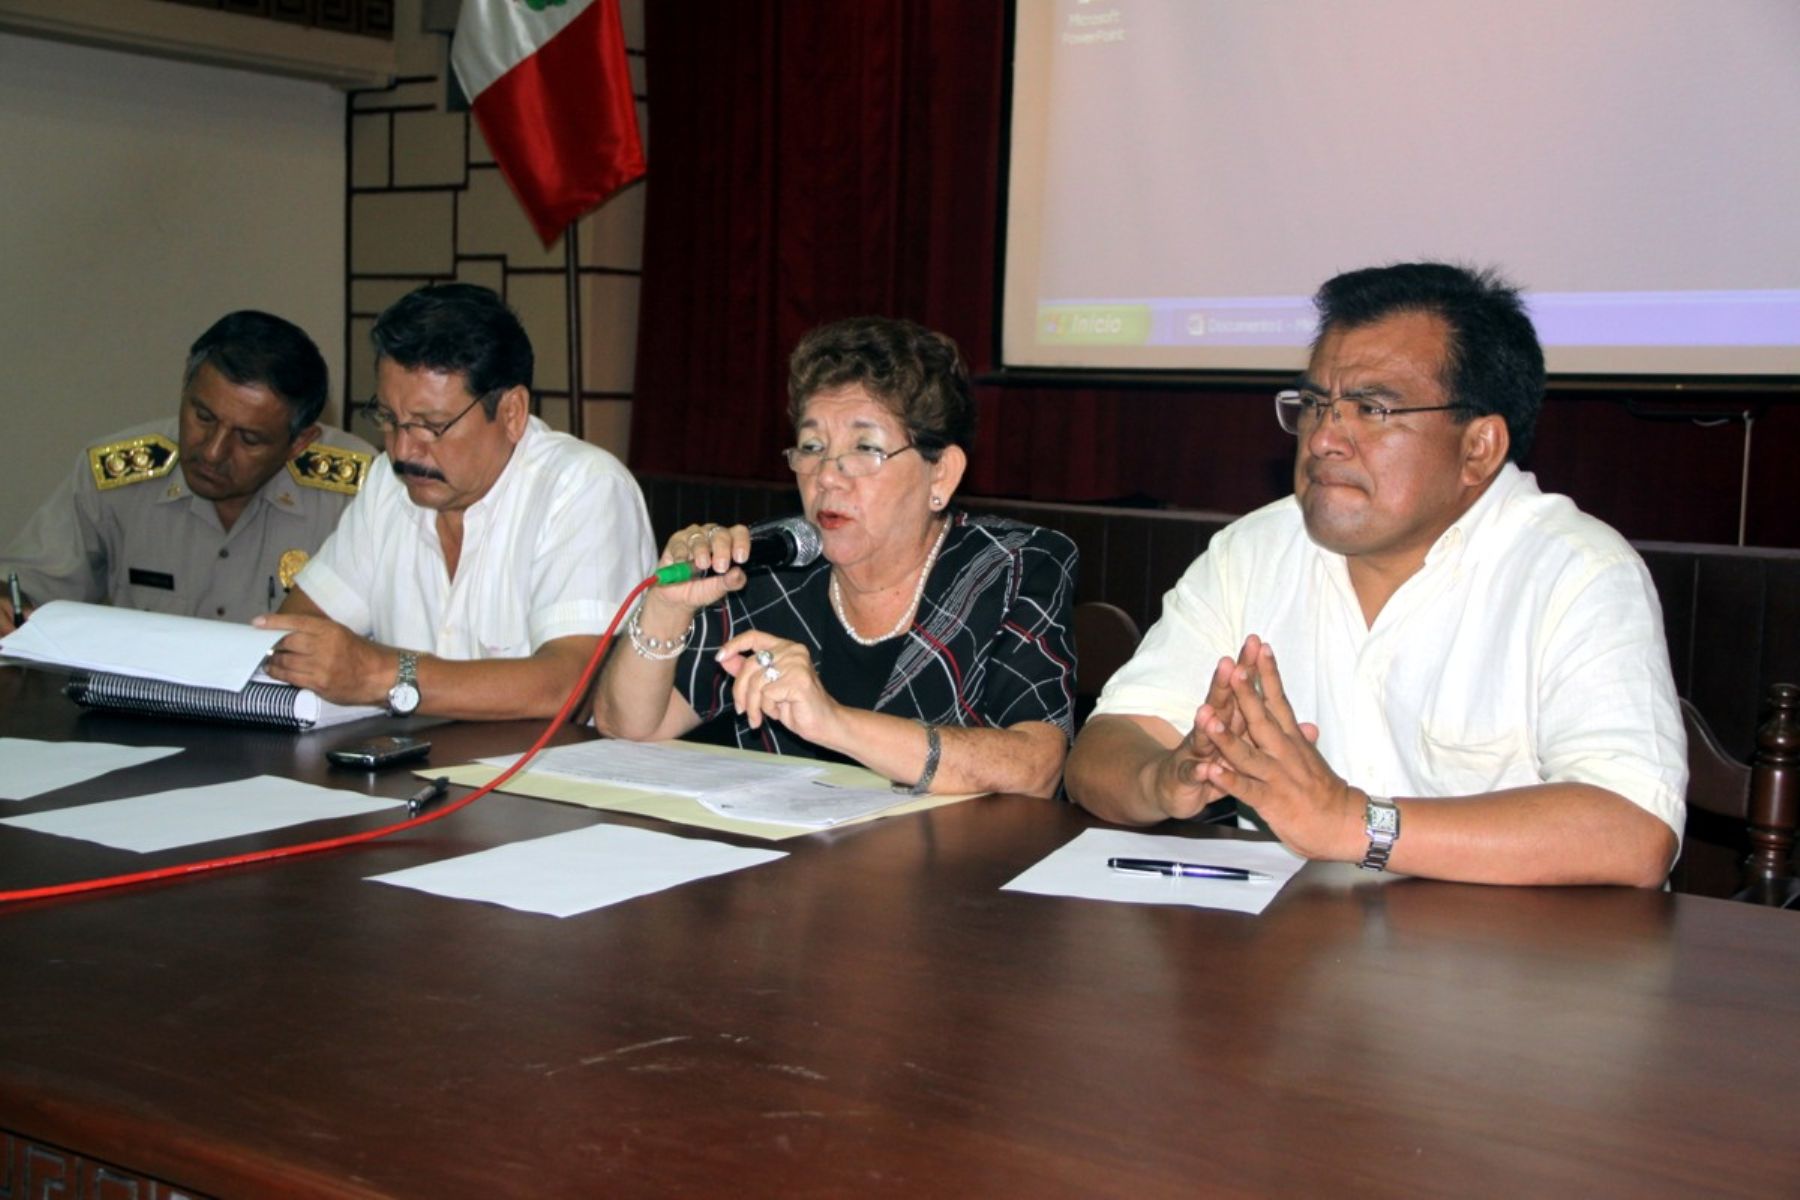 La presidenta regional de Lambayeque, Nery Saldarriaga, se reunió con el jefe del Gabinete Ministerial, Javier Velásquez, para coordinar acciones frente a lluvias. Foto: Gobierno Regional de Lambayeque.